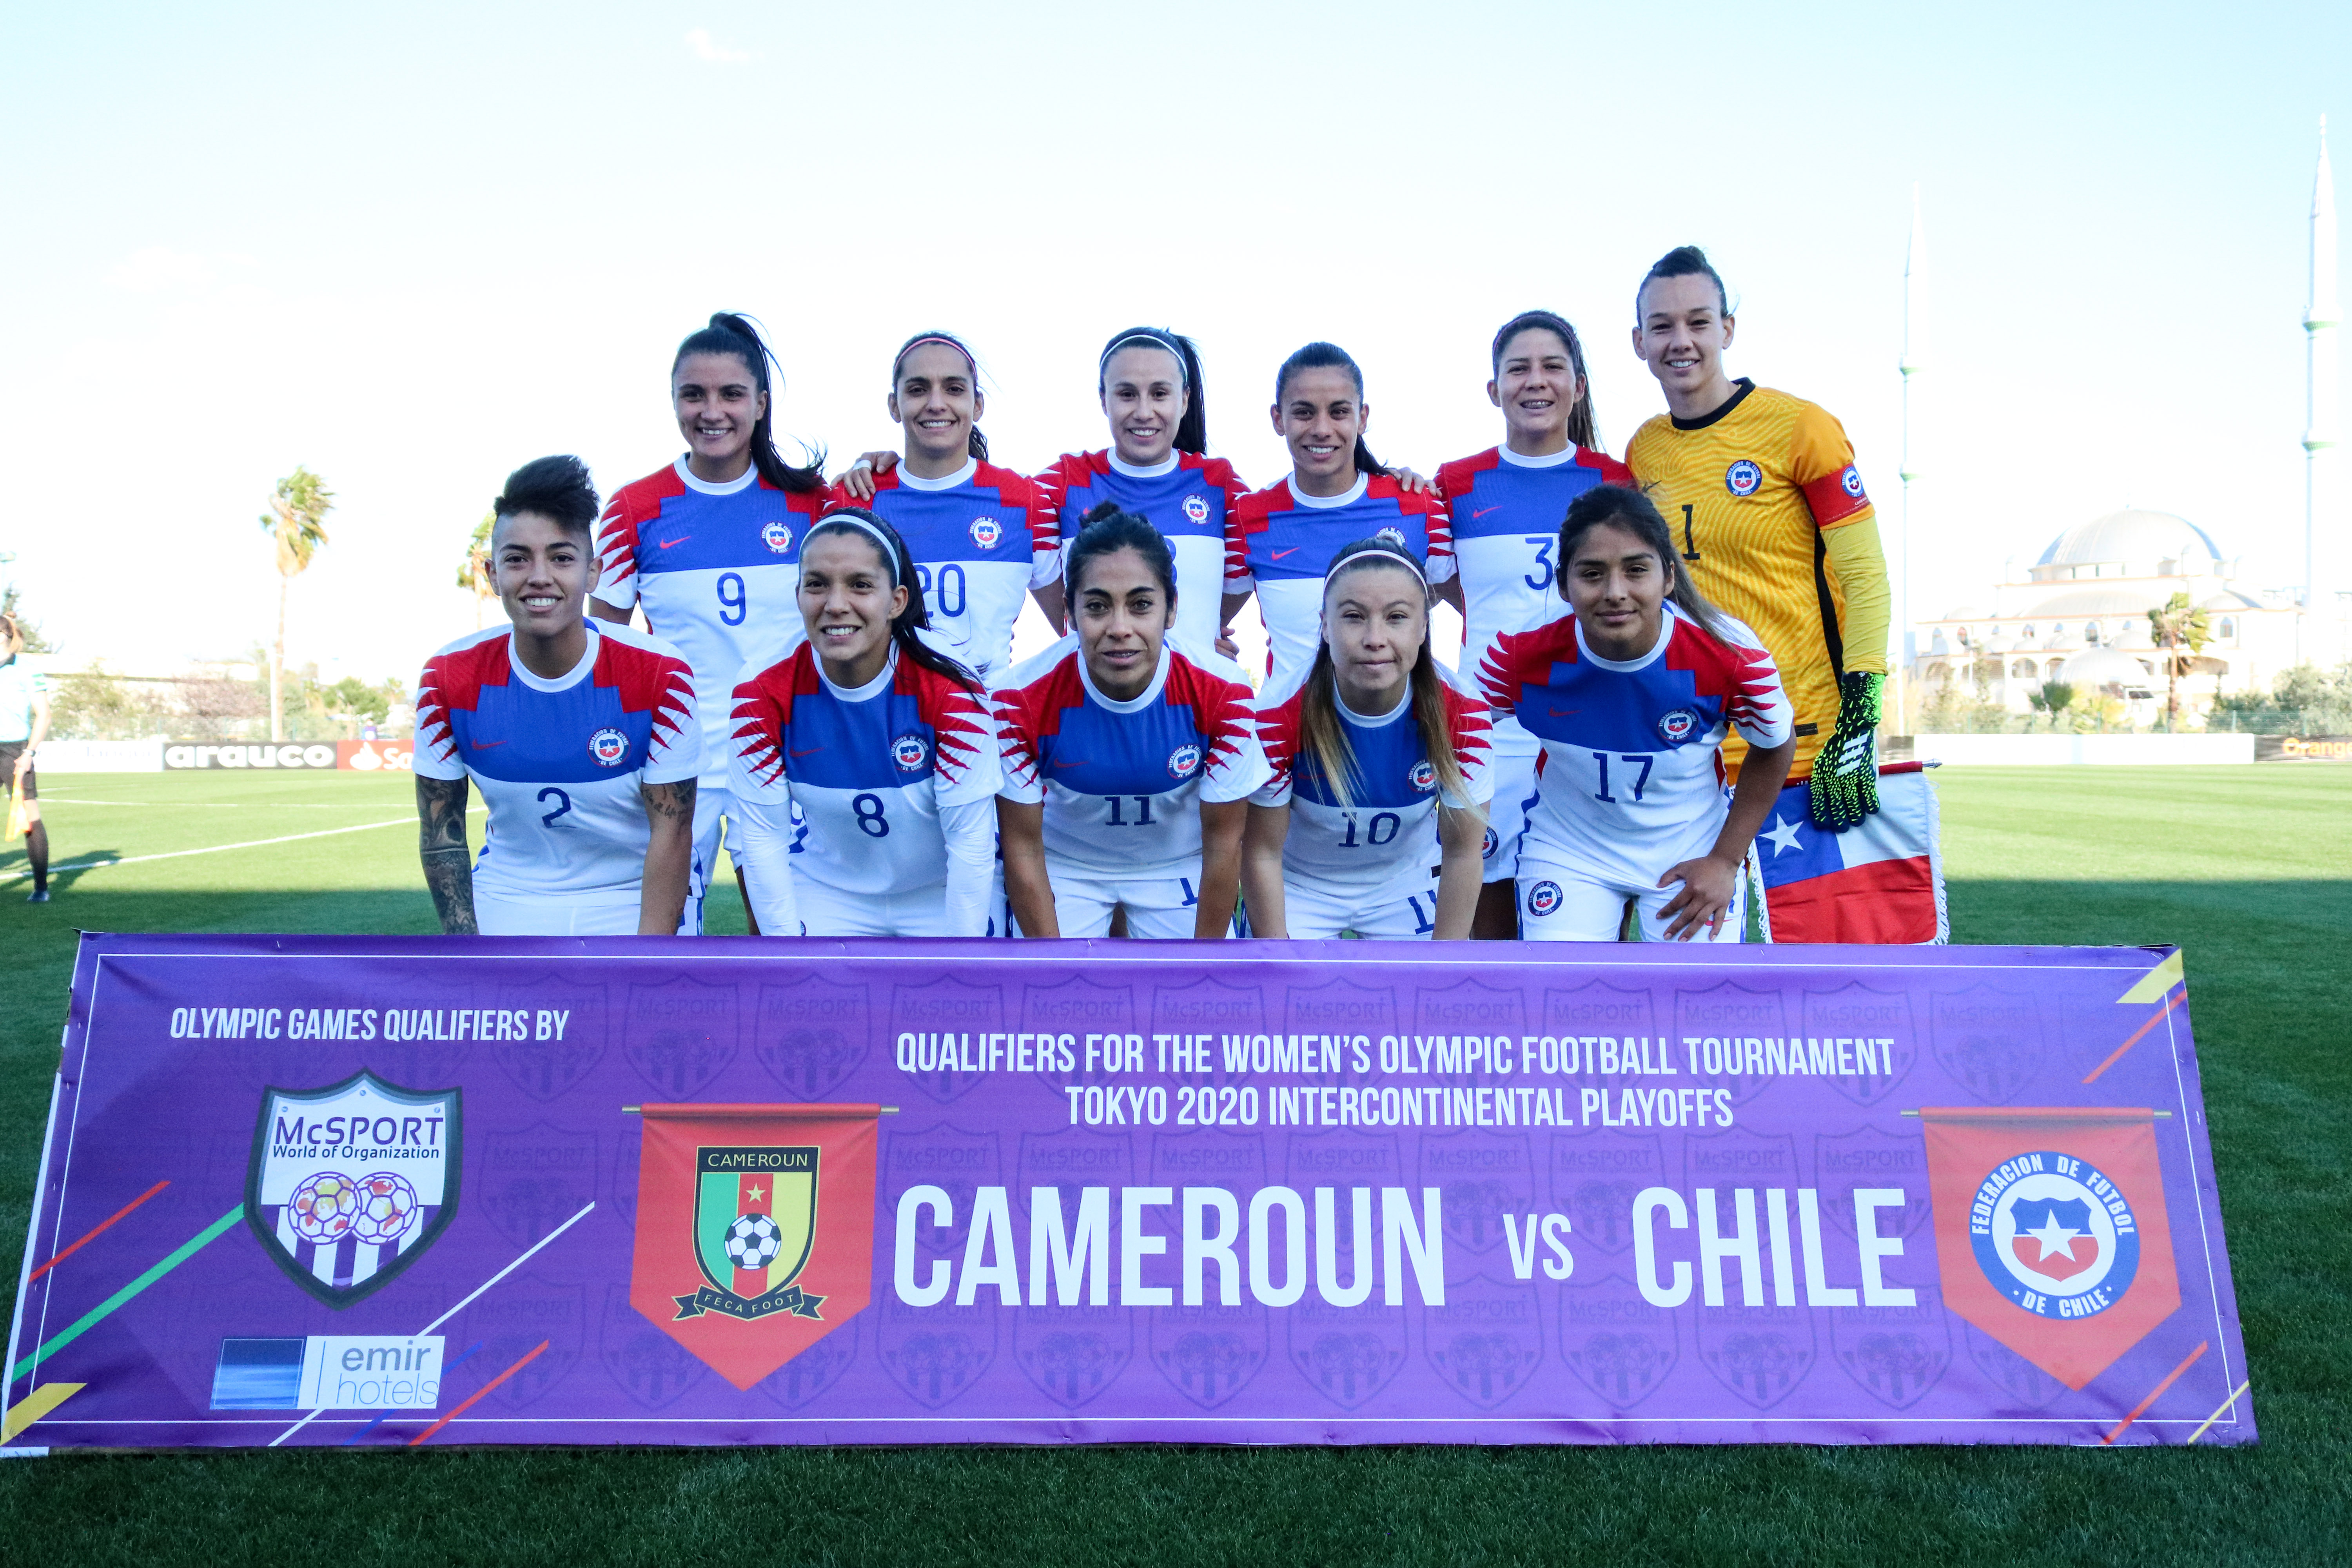 La formación de la selección chilena femenina en la ida contra Camerún por el repechaje a Tokio.